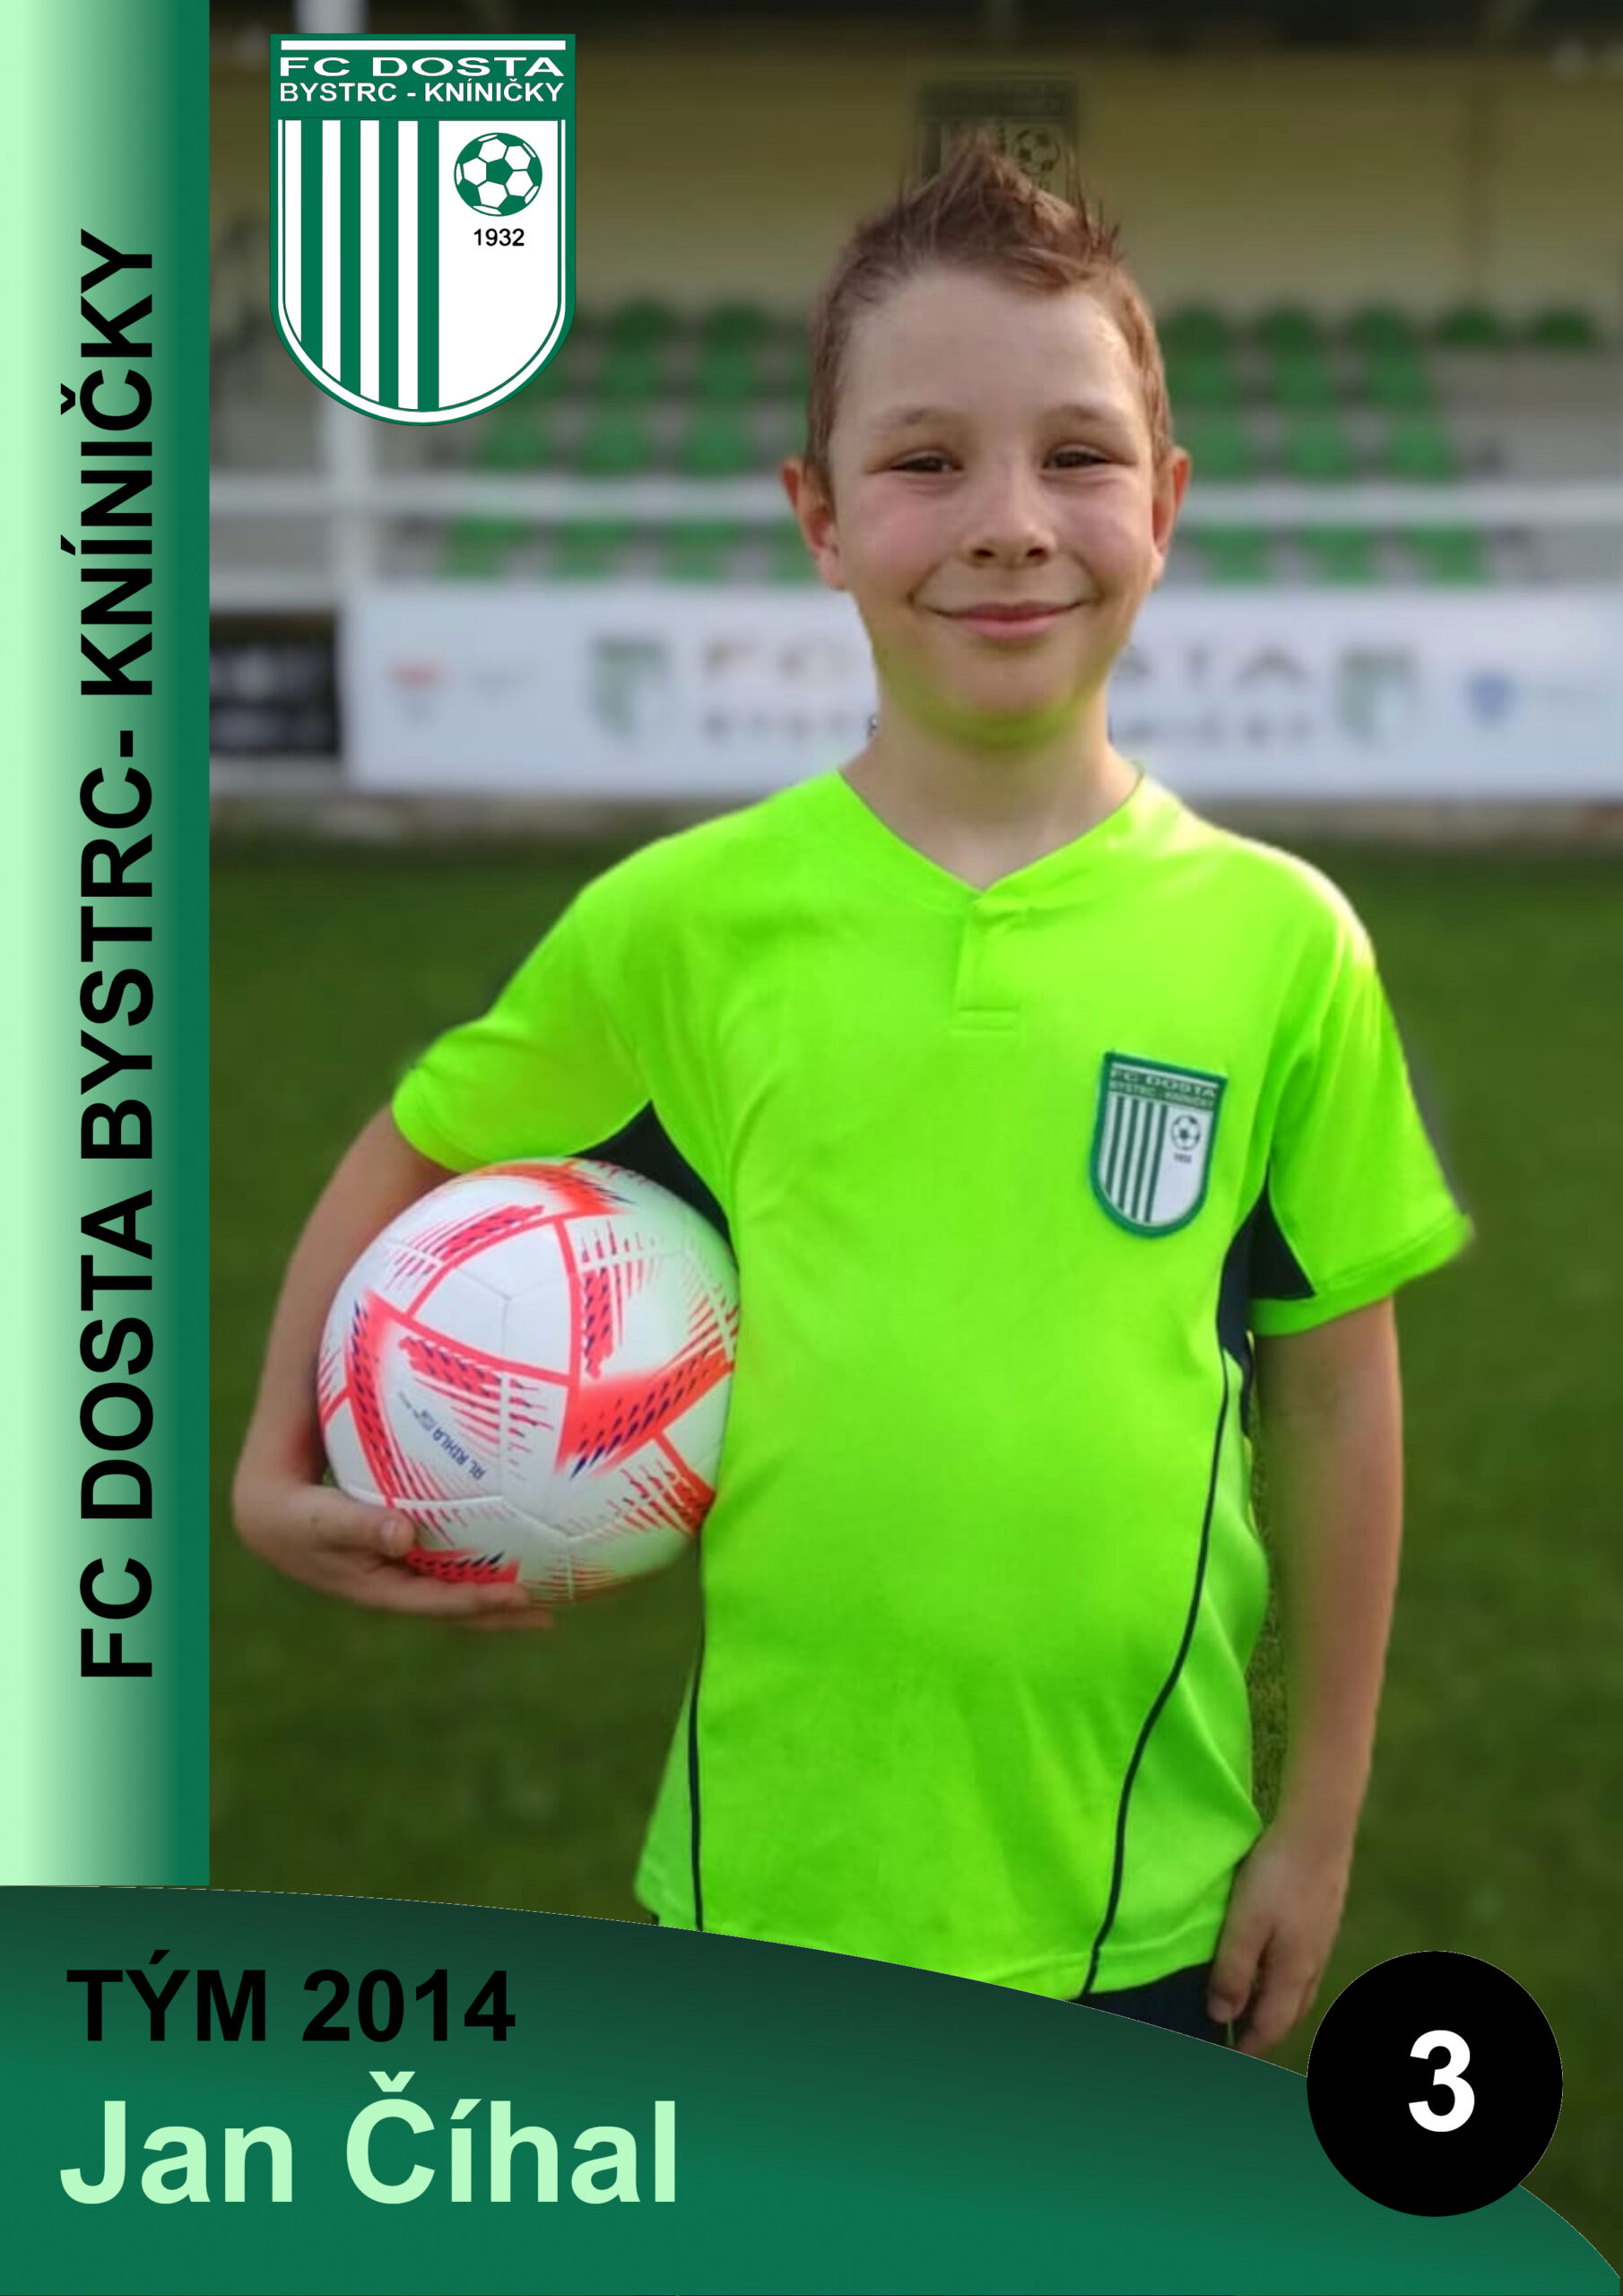 FC Dosta Bystrc - Kníničky Soupiska & realizační tým – Mladší přípravka r. 2014